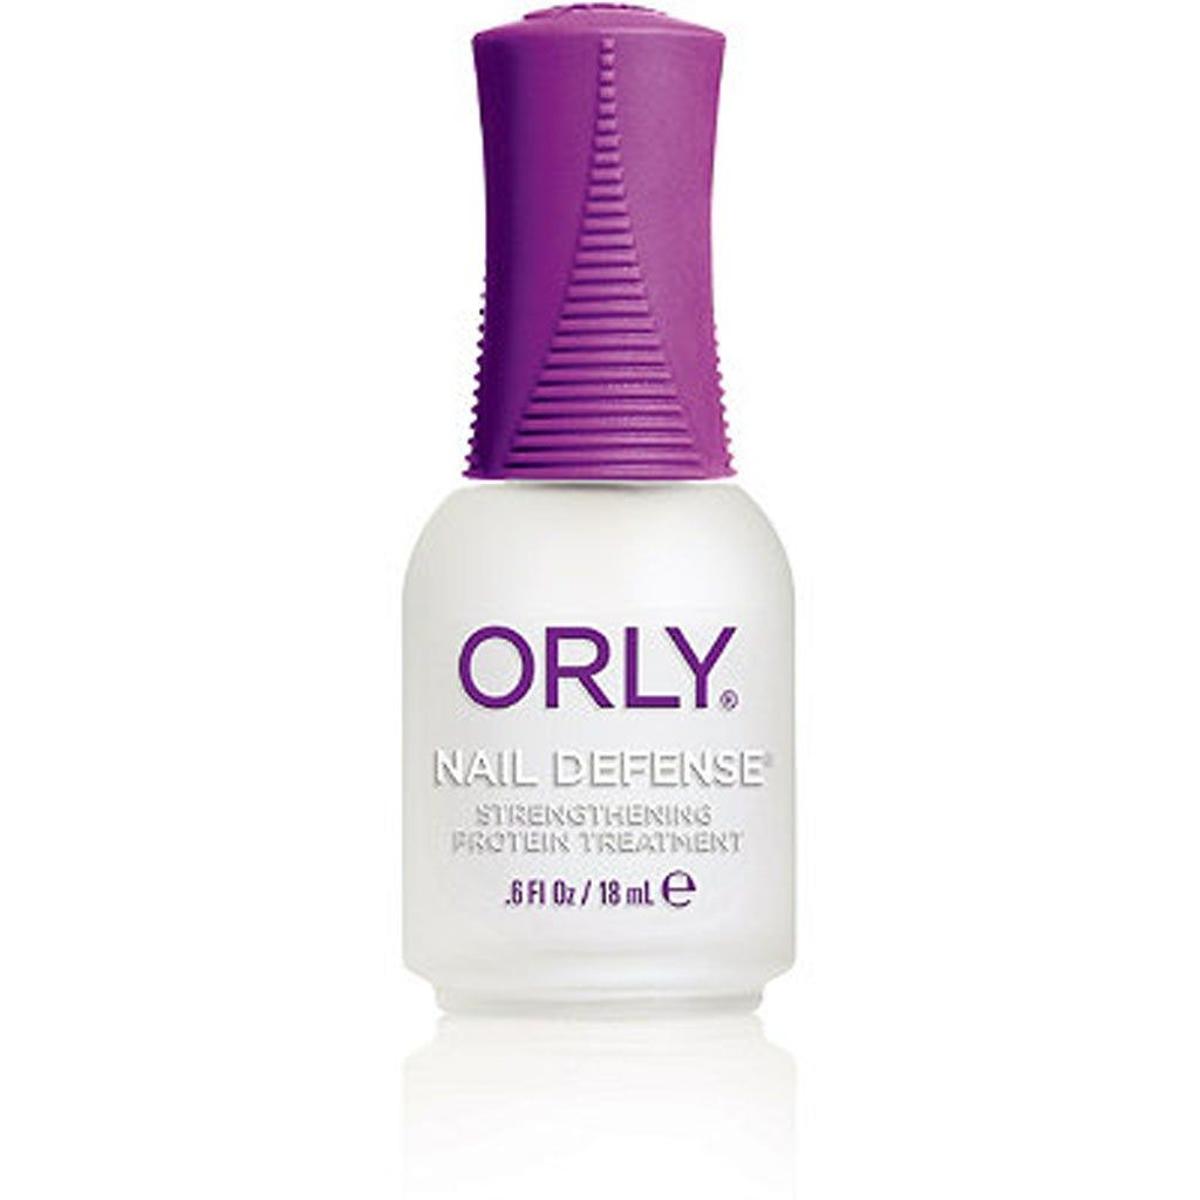 04. Utilizar como base y tratamiento el “Nail Defense” de Orly para uñas escamadas y abiertas, evitando que el esmalte salte antes de tiempo.